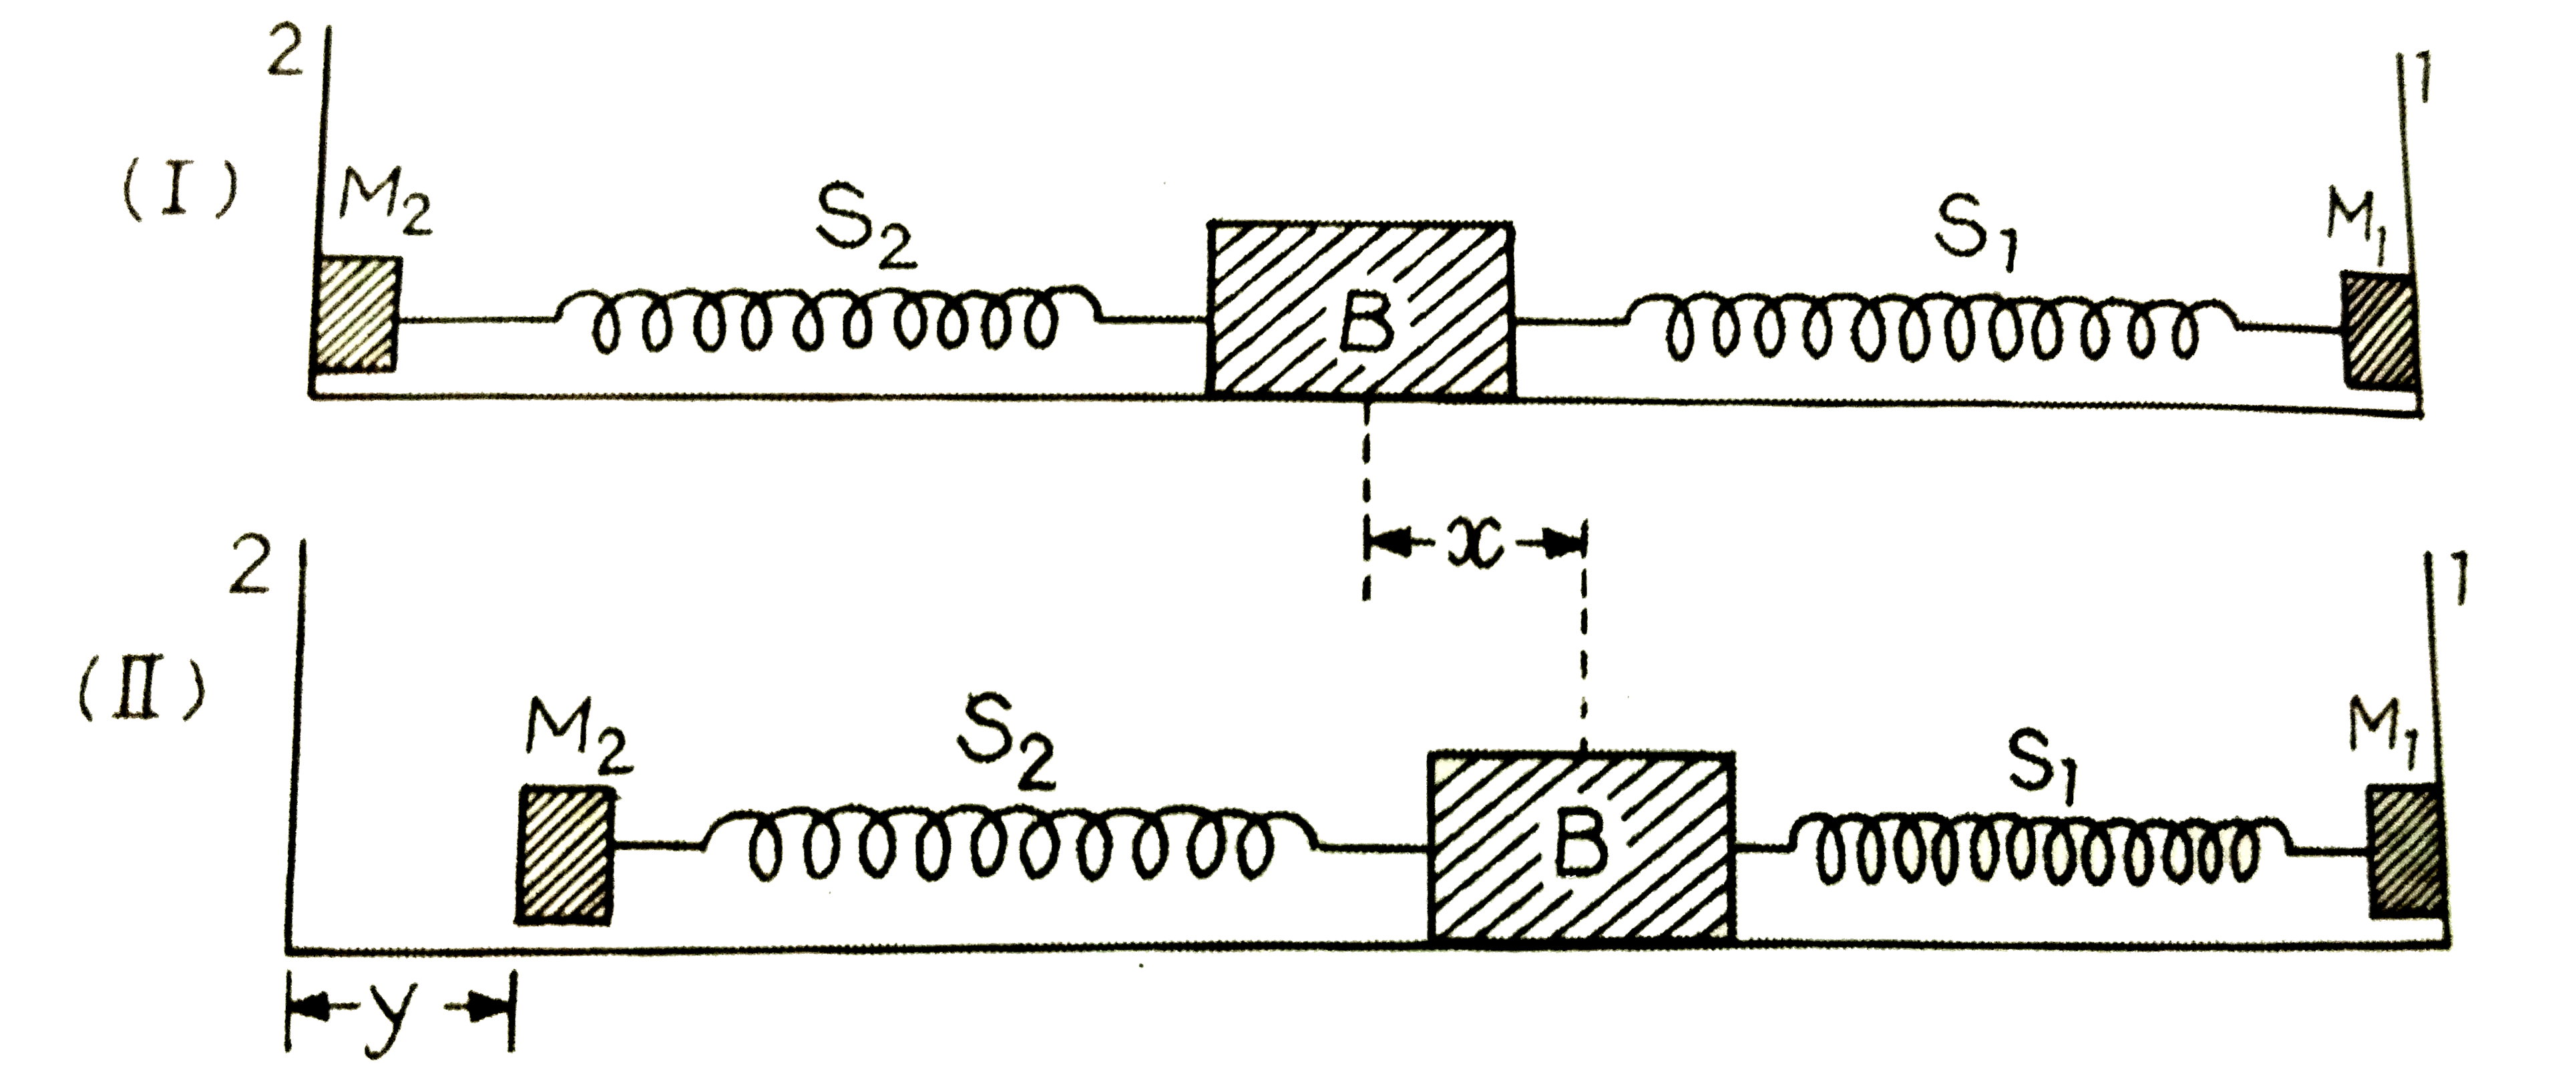 दो अतानित स्प्रिन्गे S1 तथा S2  जिनके स्प्रिंग - नियतांक क्रमशः k तथा 4k  है को एक ब्लॉक B  से जोड़ा गया है ( चित्र ) स्प्रिंगों के दूसरे सिरों को आधार M1 तथा M2  से जोड़ा गया है , जो दीवार से नहीं जुड़े है स्प्रिंगों तथा आधारों का द्रव्यमान नगण्य है कहीं भी कोई घर्षण नहीं है ब्लॉक B को दीवार -1 की ओर एक अलप - दूरी x तक विस्थापित करके छोड़ दिए जाता है ब्लॉक वापस आता है तथा दीवार -2 की ओर अधिकतम दूरी y तक जाता है x तथा y  को ब्लॉक की साम्यावस्था से मापा जाता है अनुपात y//x  का मान है